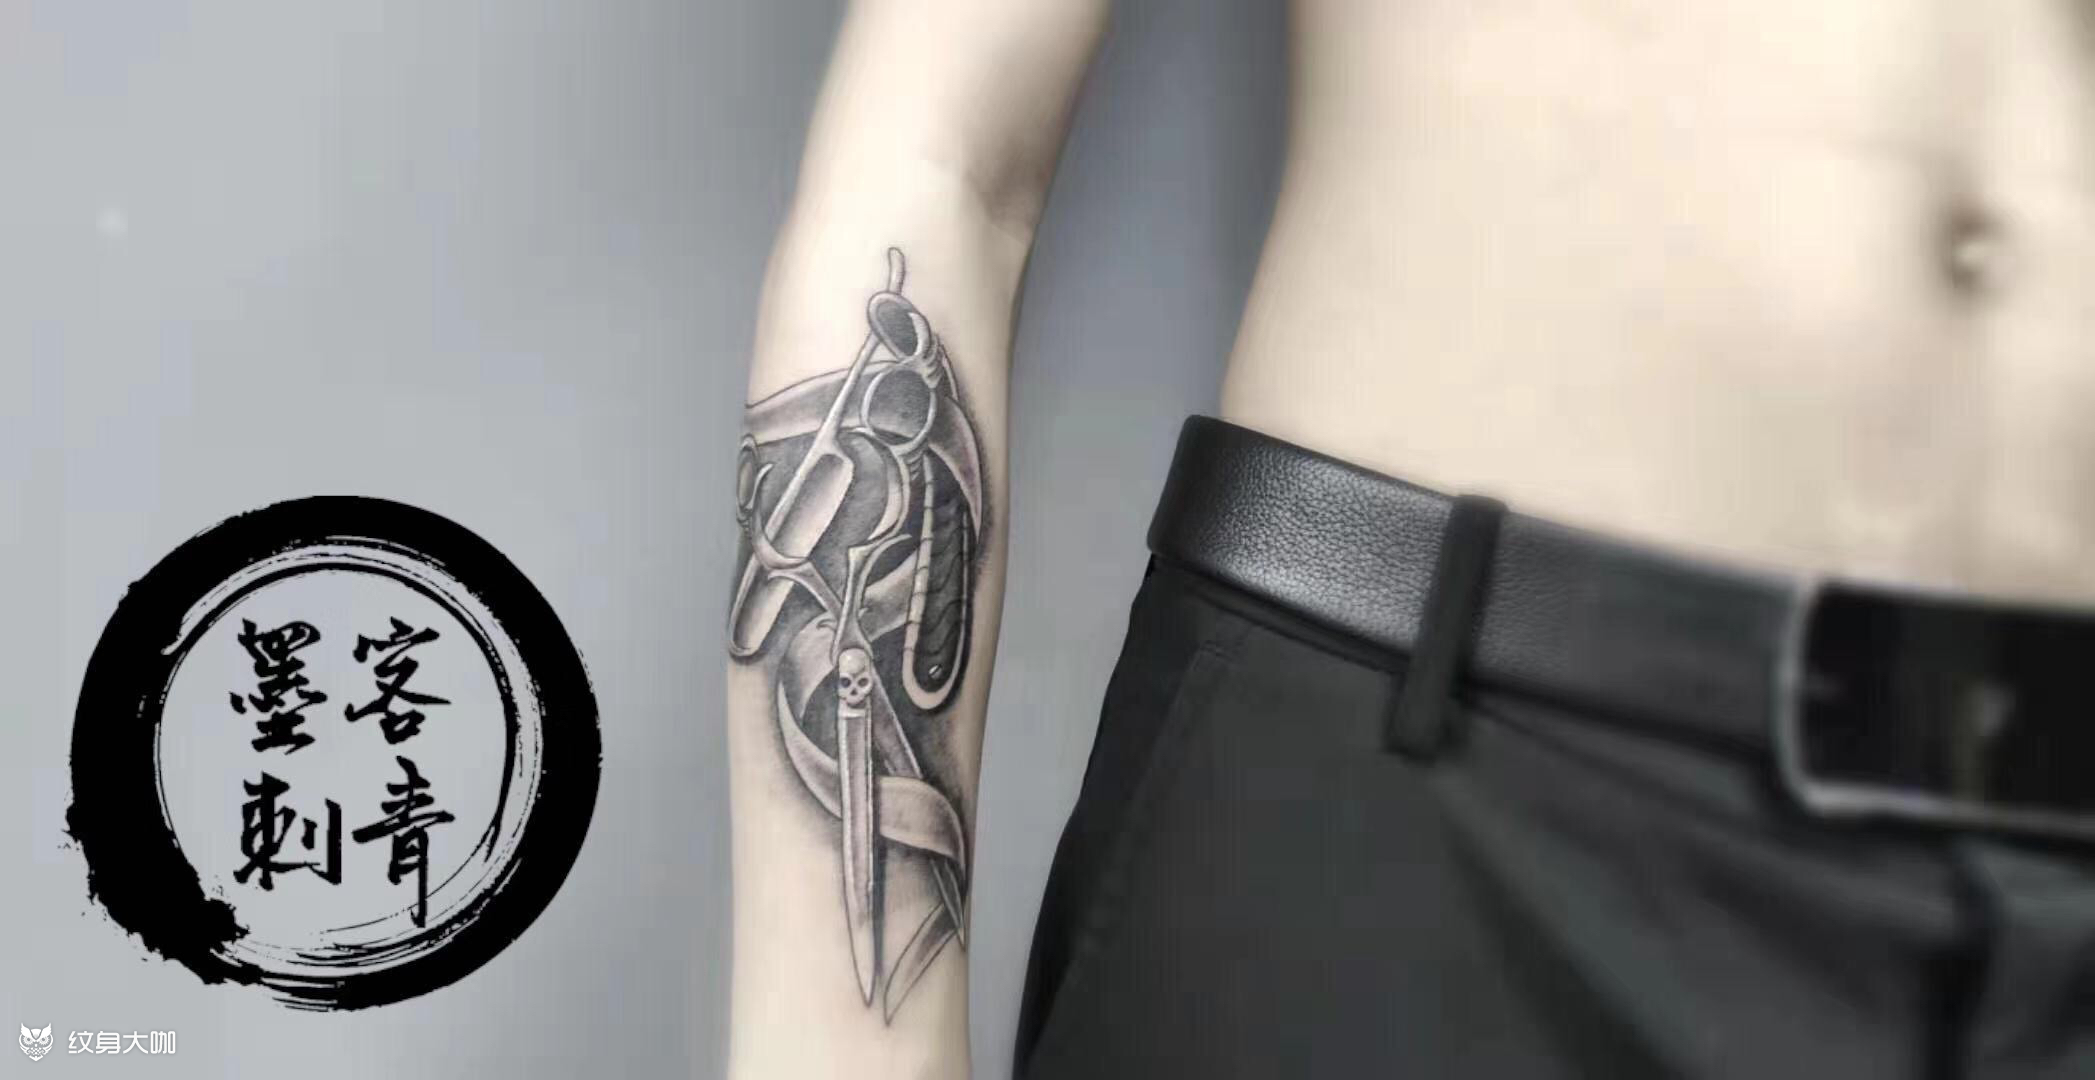 广州墨客刺青首席纹身师写实剪刀手臂欧美写实 作品简介:做美发的小